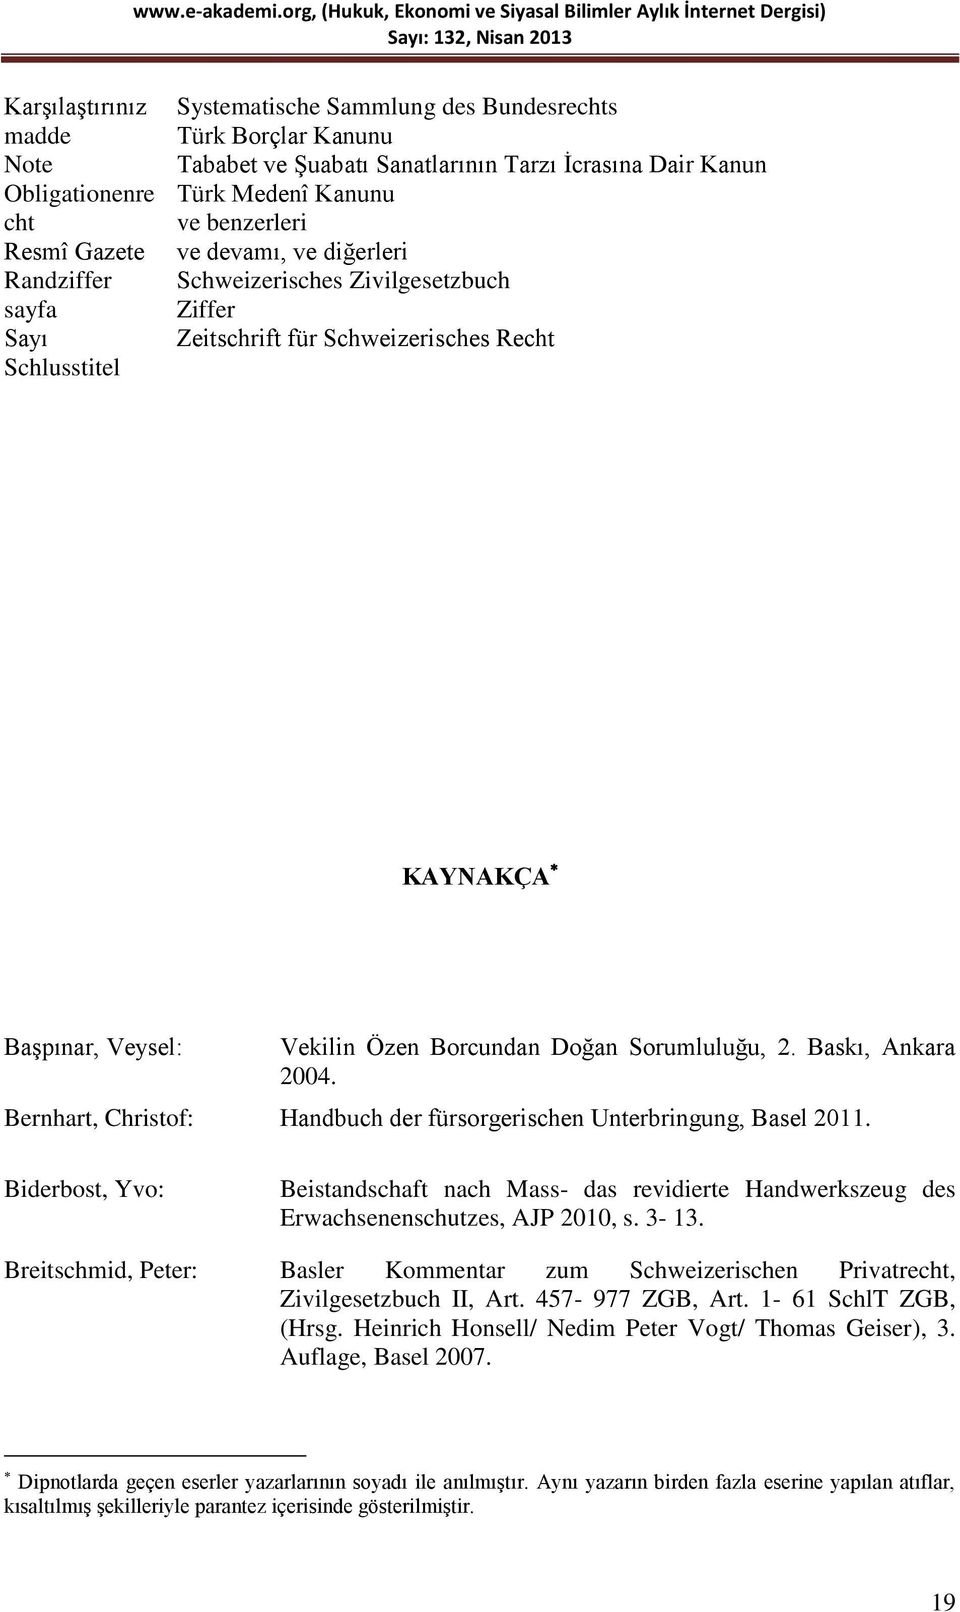 Borcundan Doğan Sorumluluğu, 2. Baskı, Ankara 2004. Bernhart, Christof: Handbuch der fürsorgerischen Unterbringung, Basel 2011.